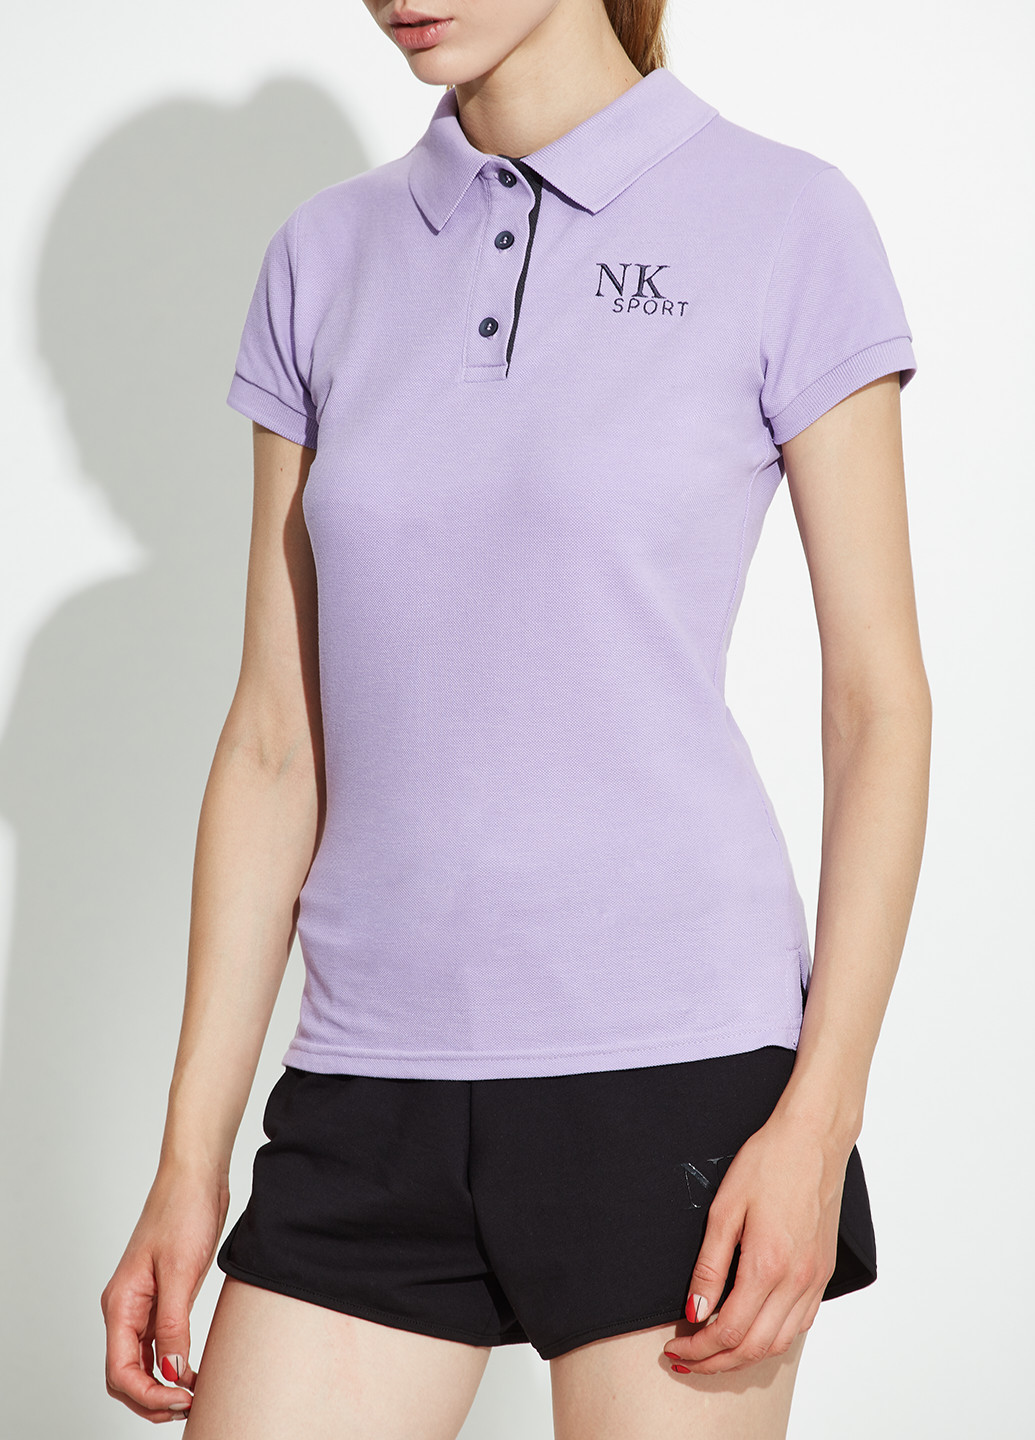 Сиреневая женская футболка-поло NKsport